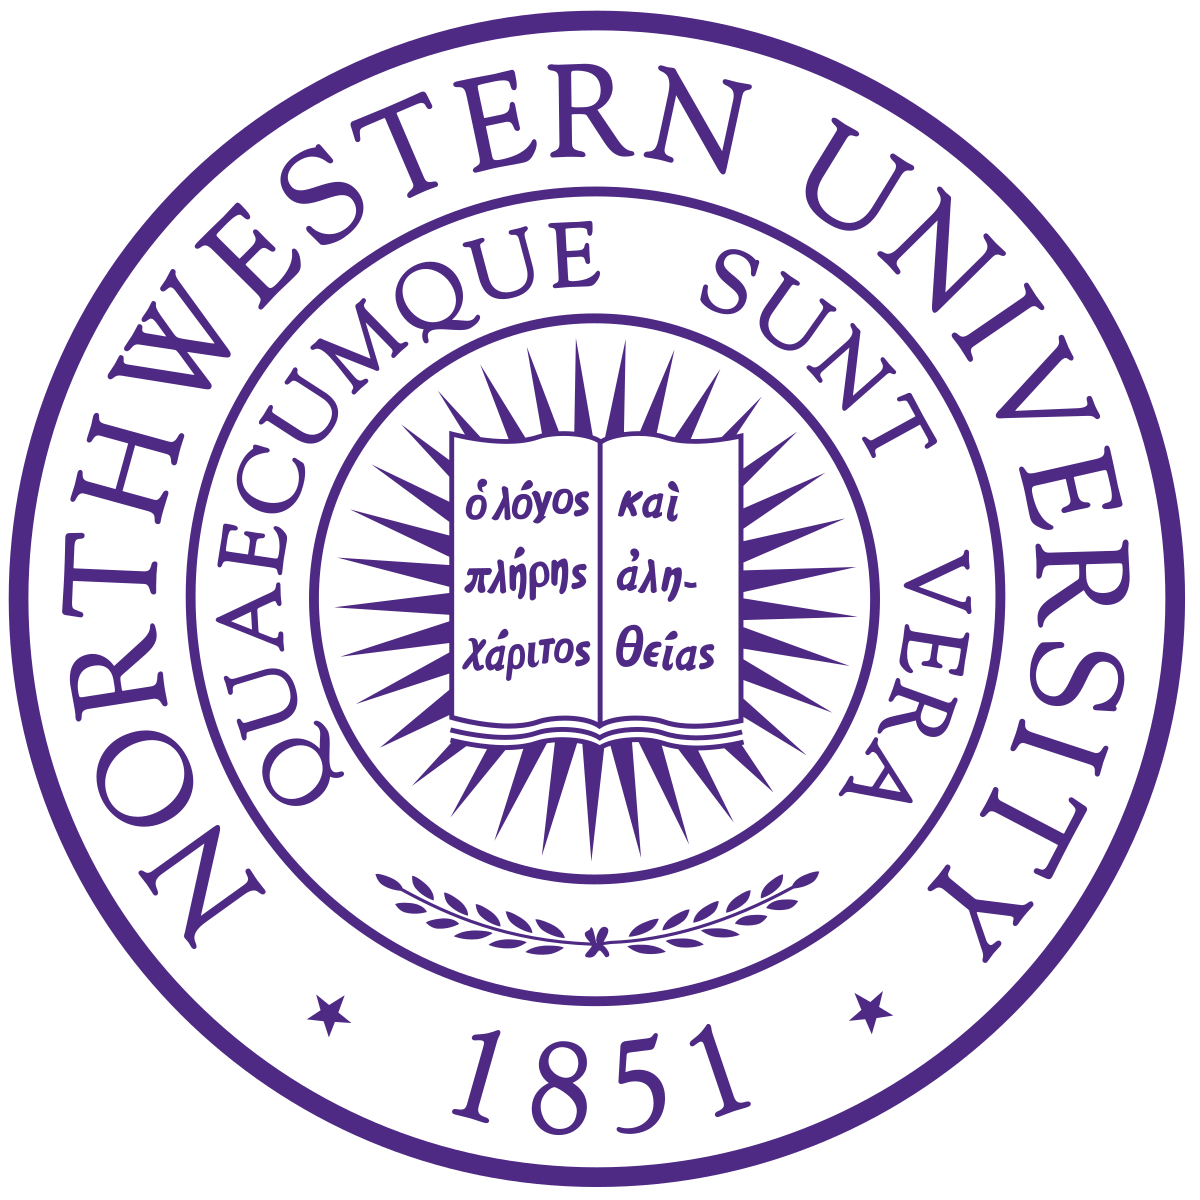 Northwestern Logo - Northwestern University